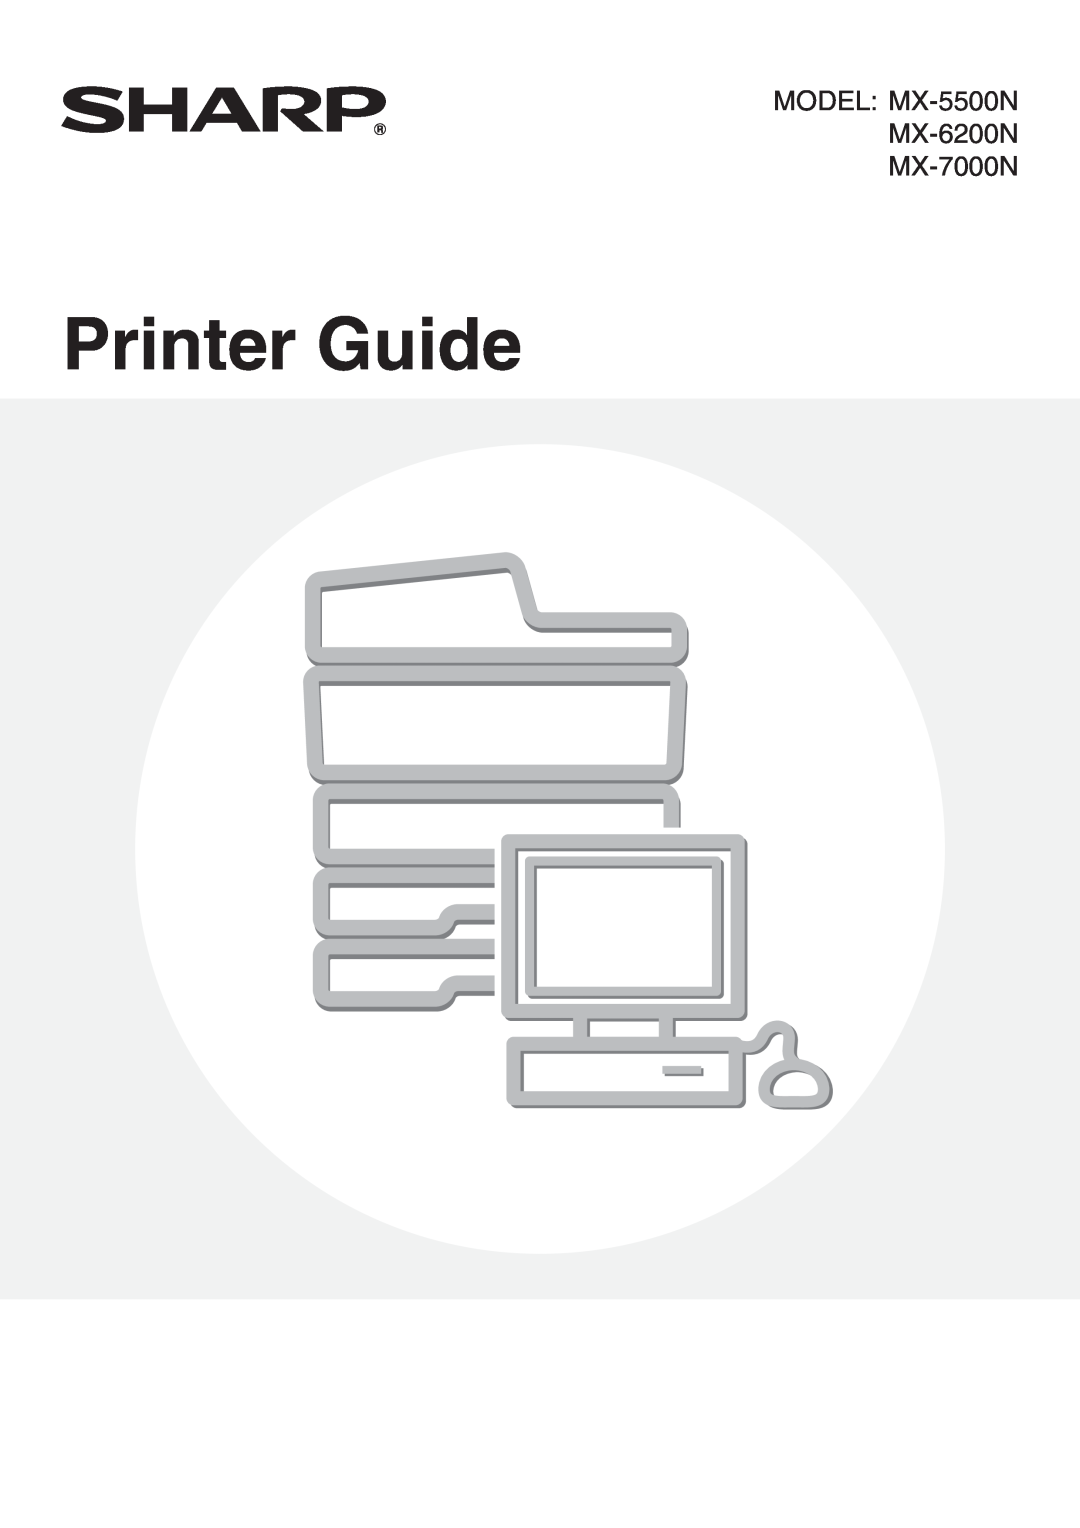 Sharp manual MODEL MX-5500N MX-6200N MX-7000N, Printer Guide 